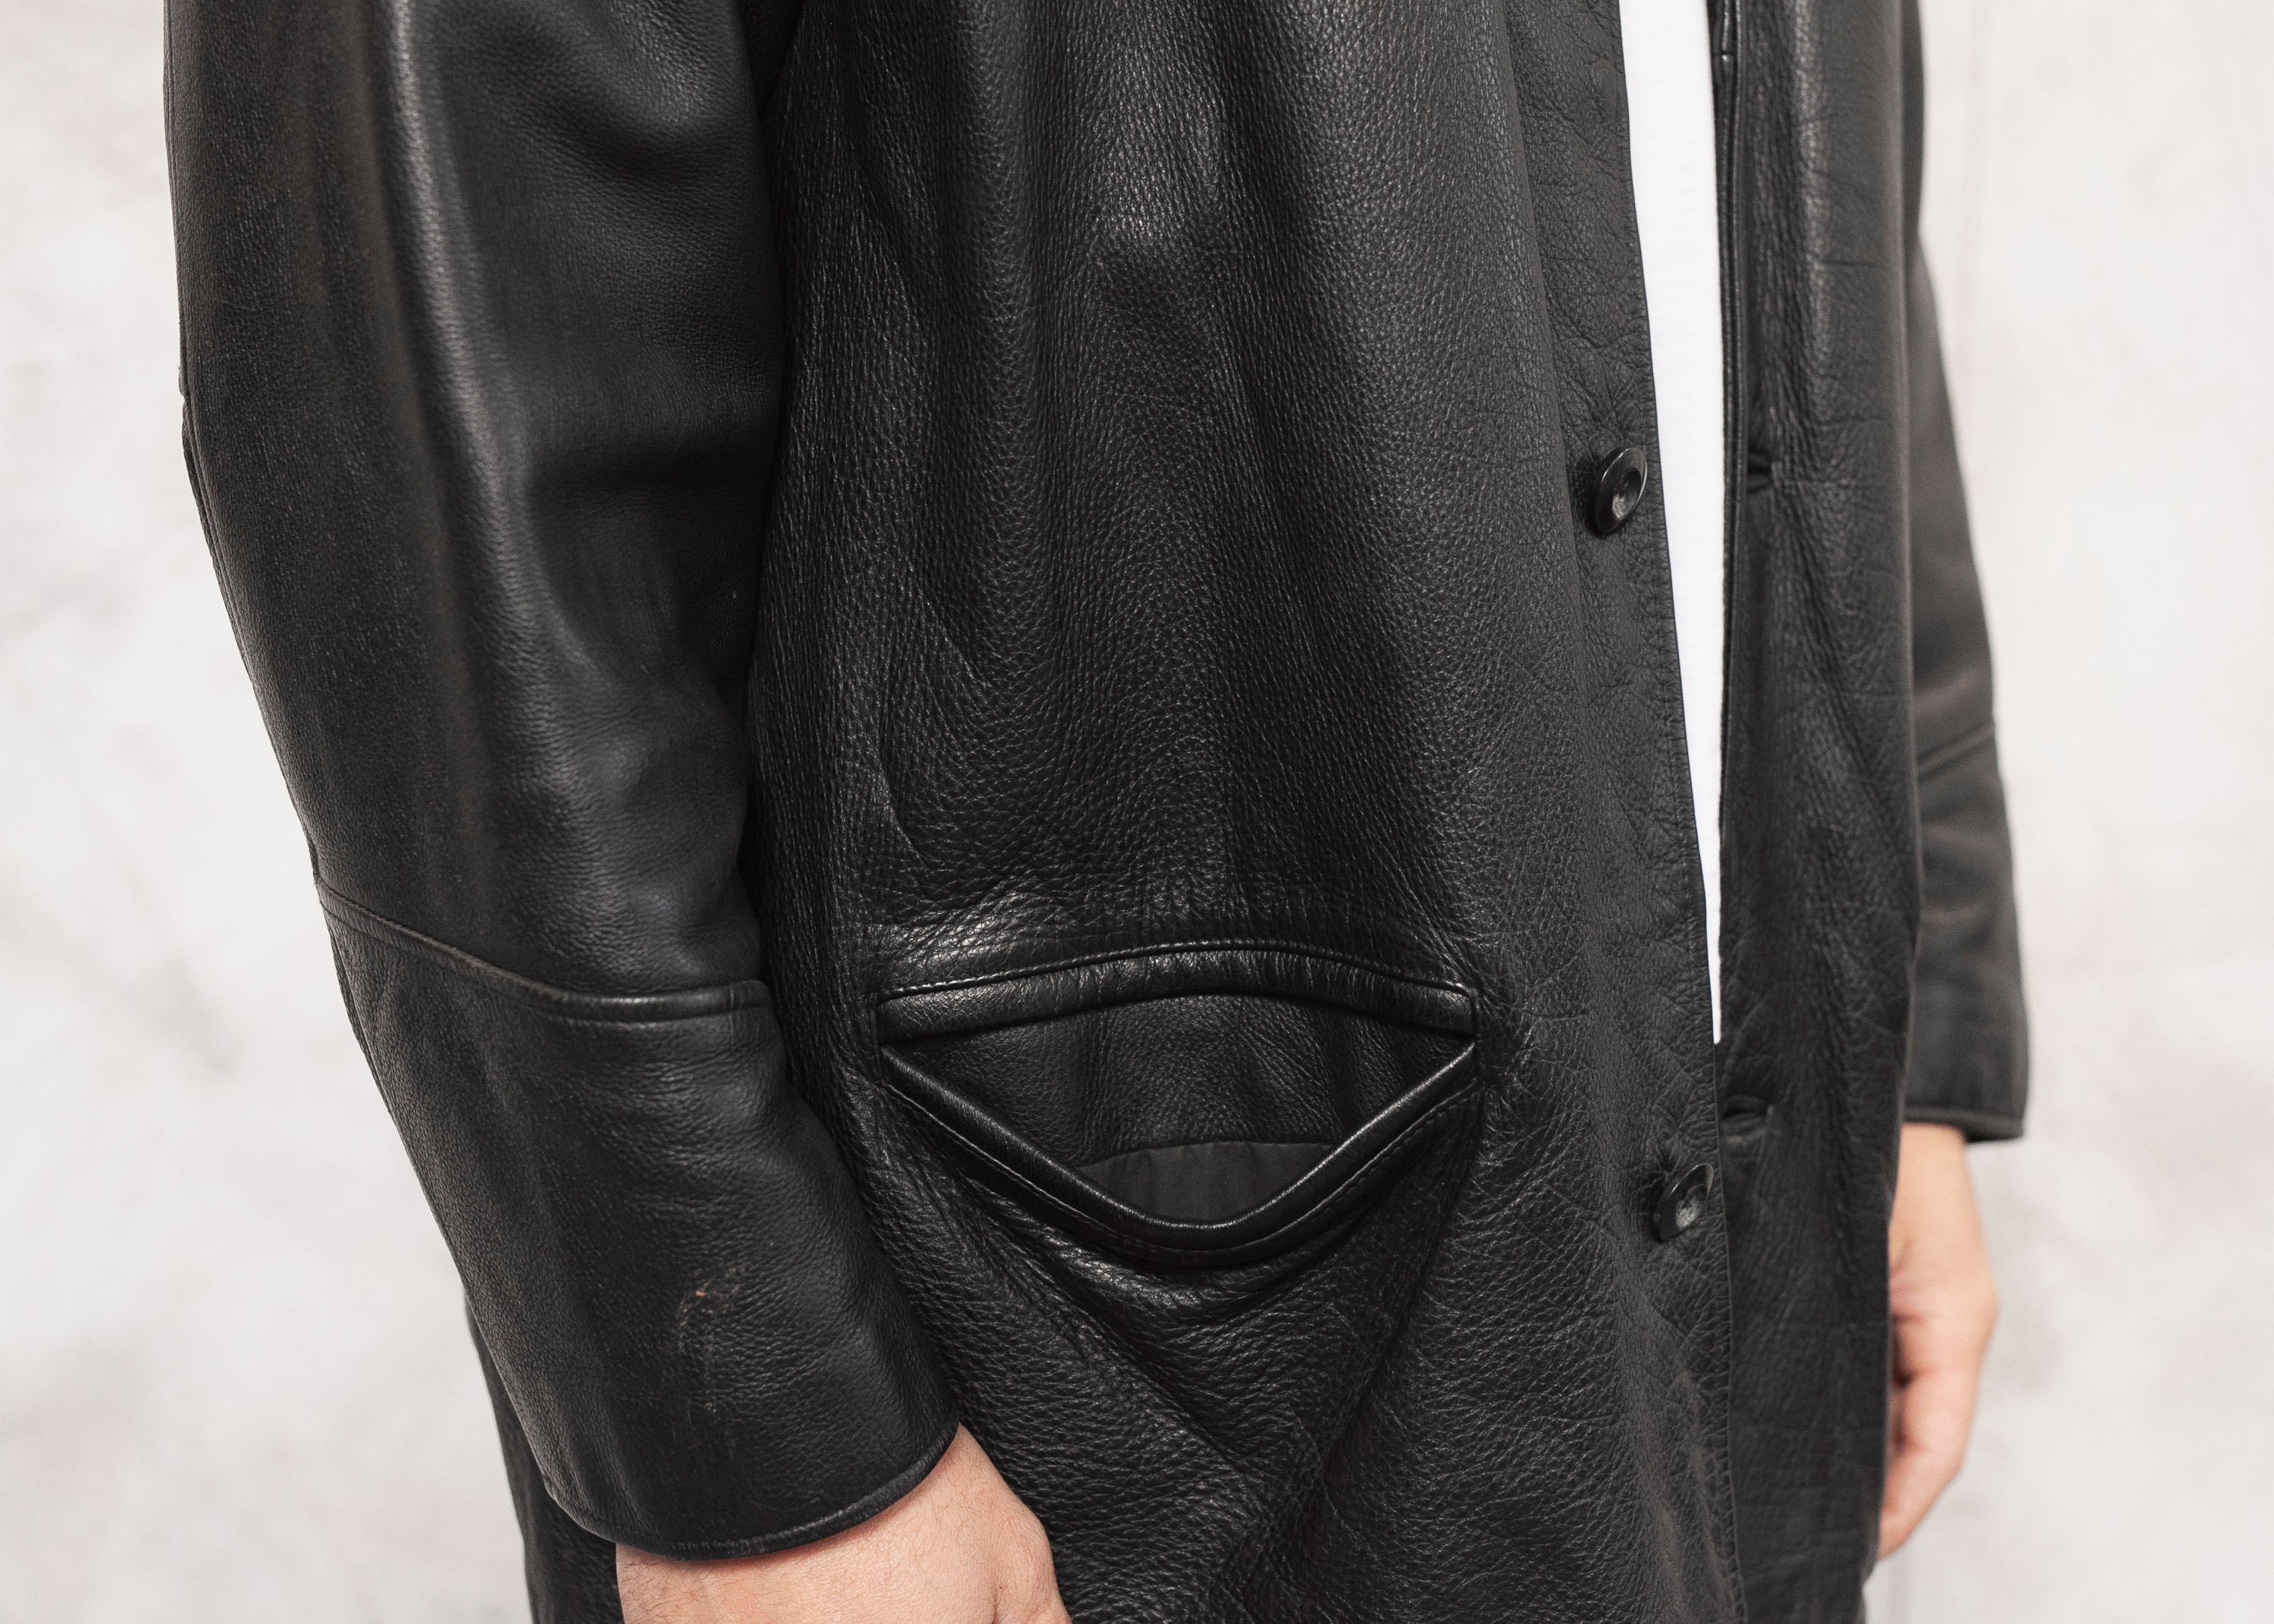 Black Leather Coat 90s Vintage Men's Black Leather Jacket Men Overcoat ...